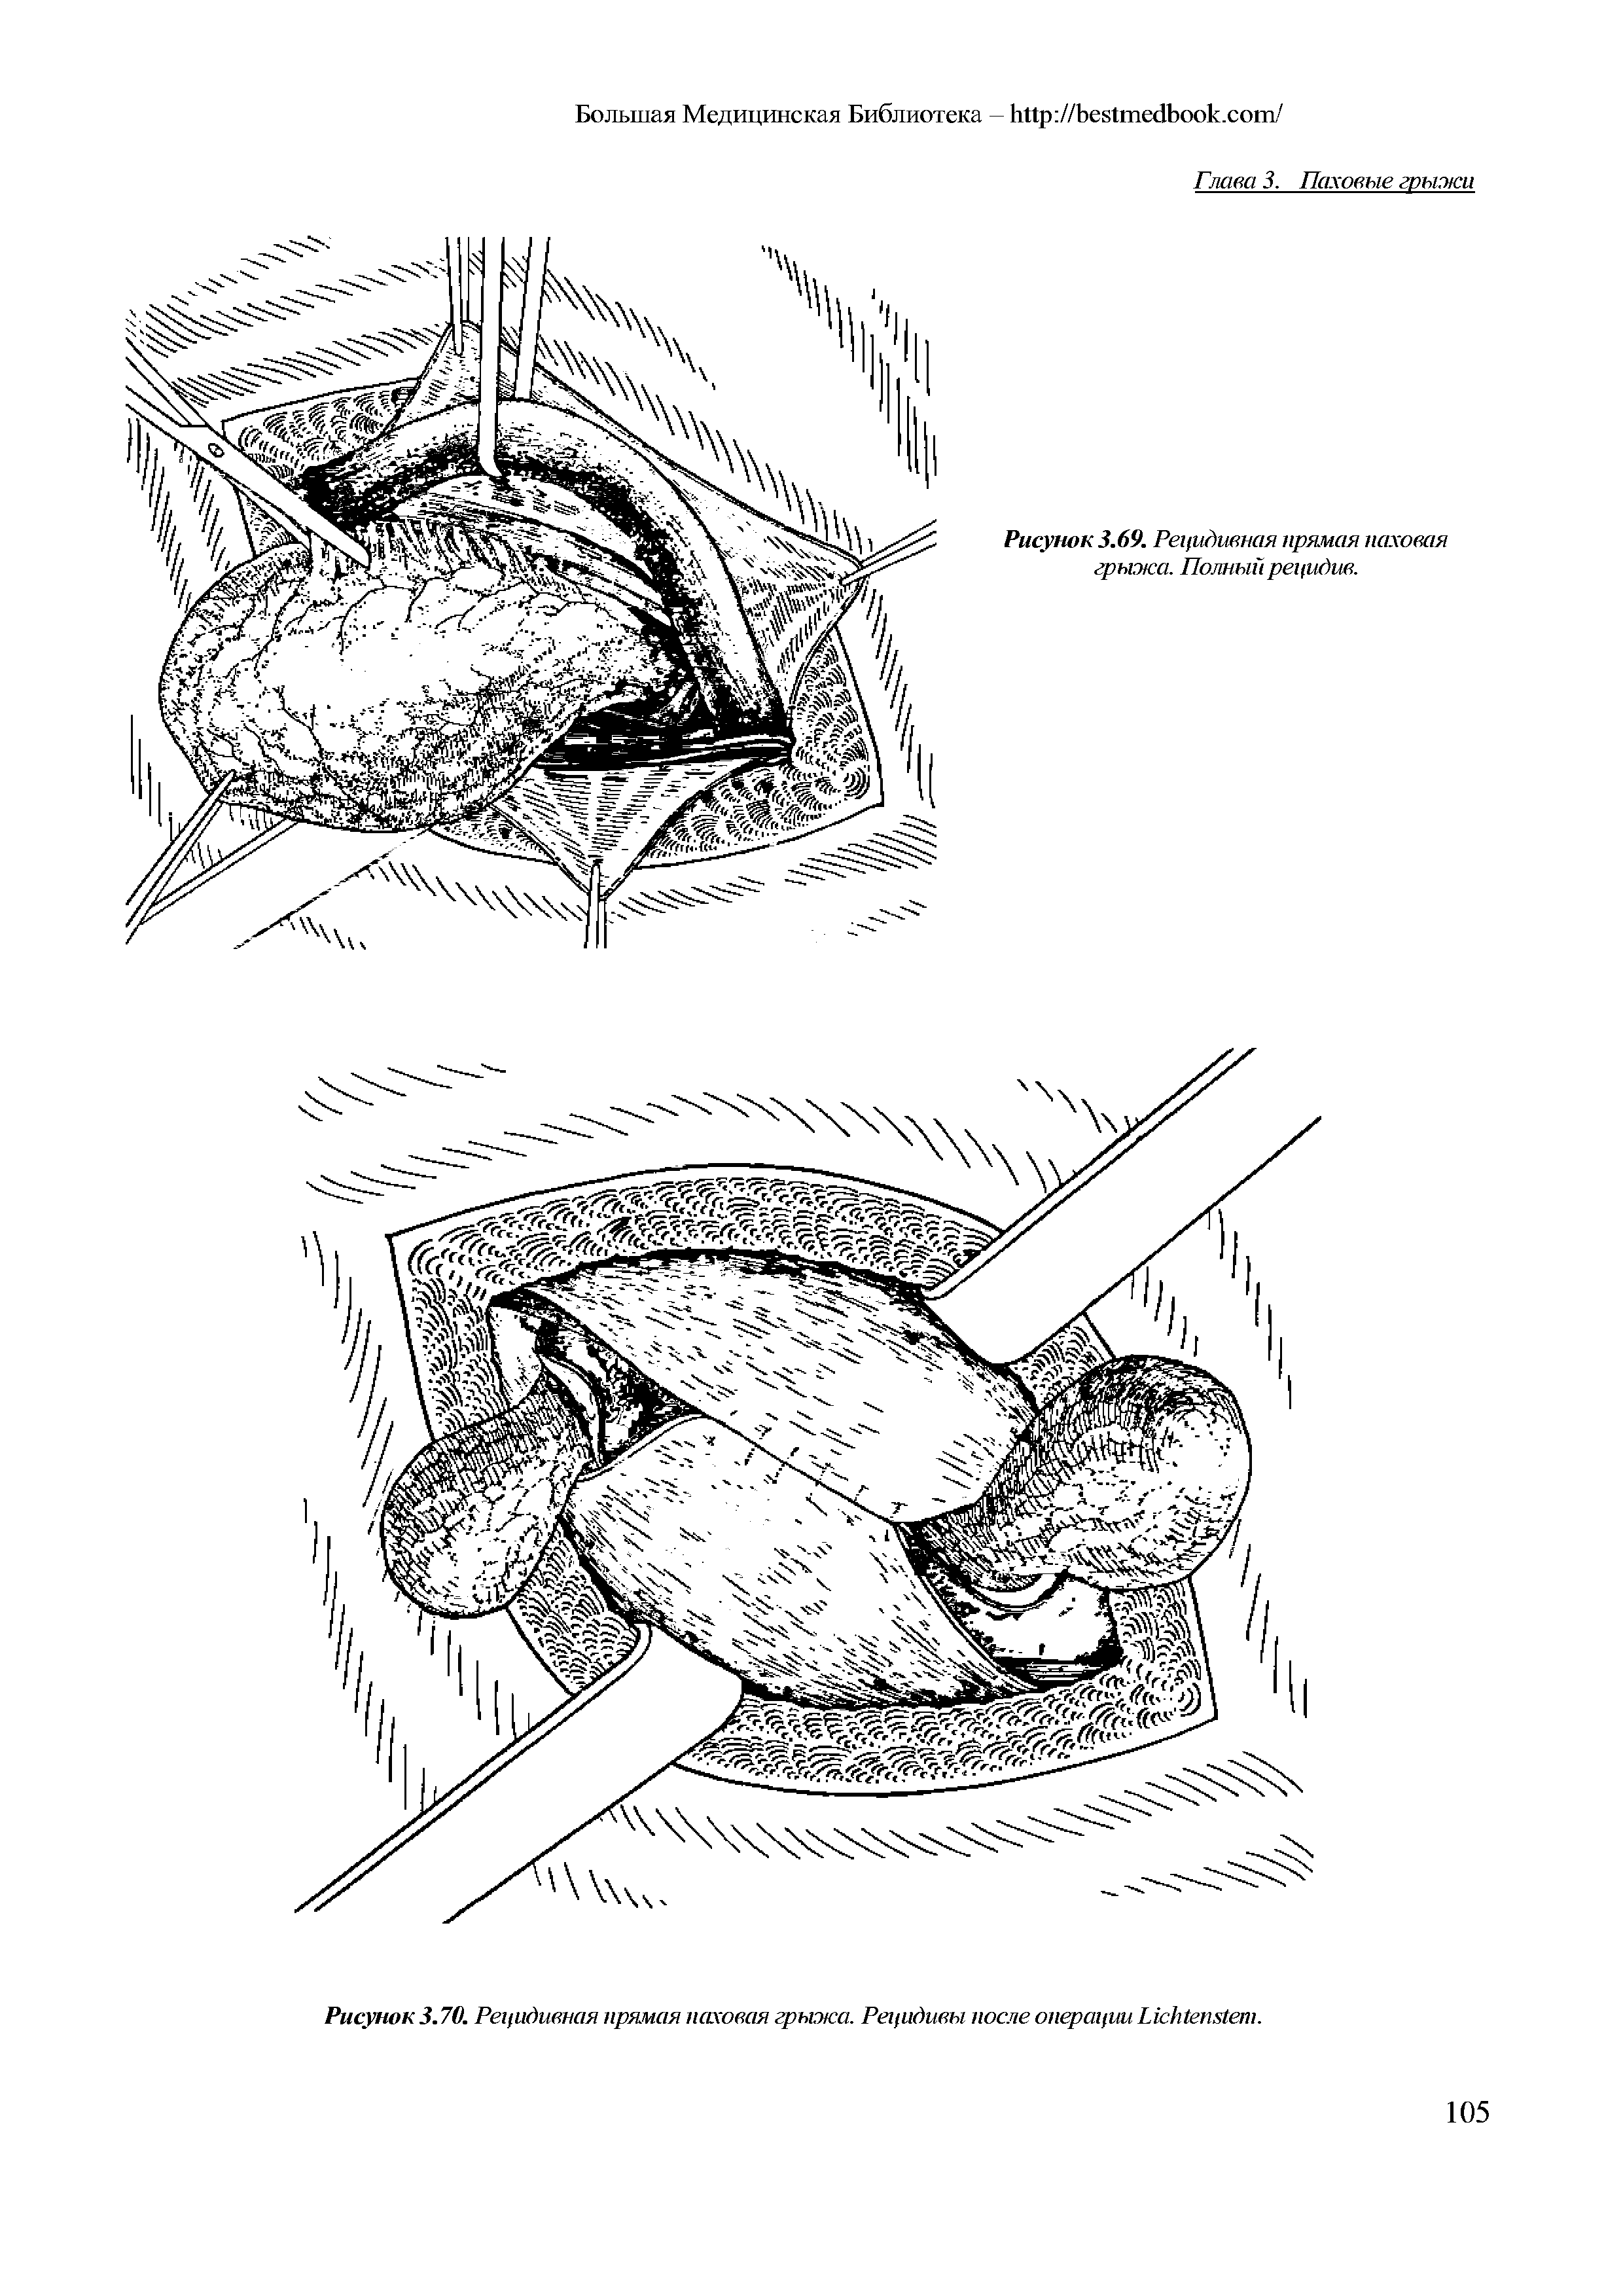 Рисунок 3.70. Рецидивная прямая паховая грыжа. Рецидивы после операции L .